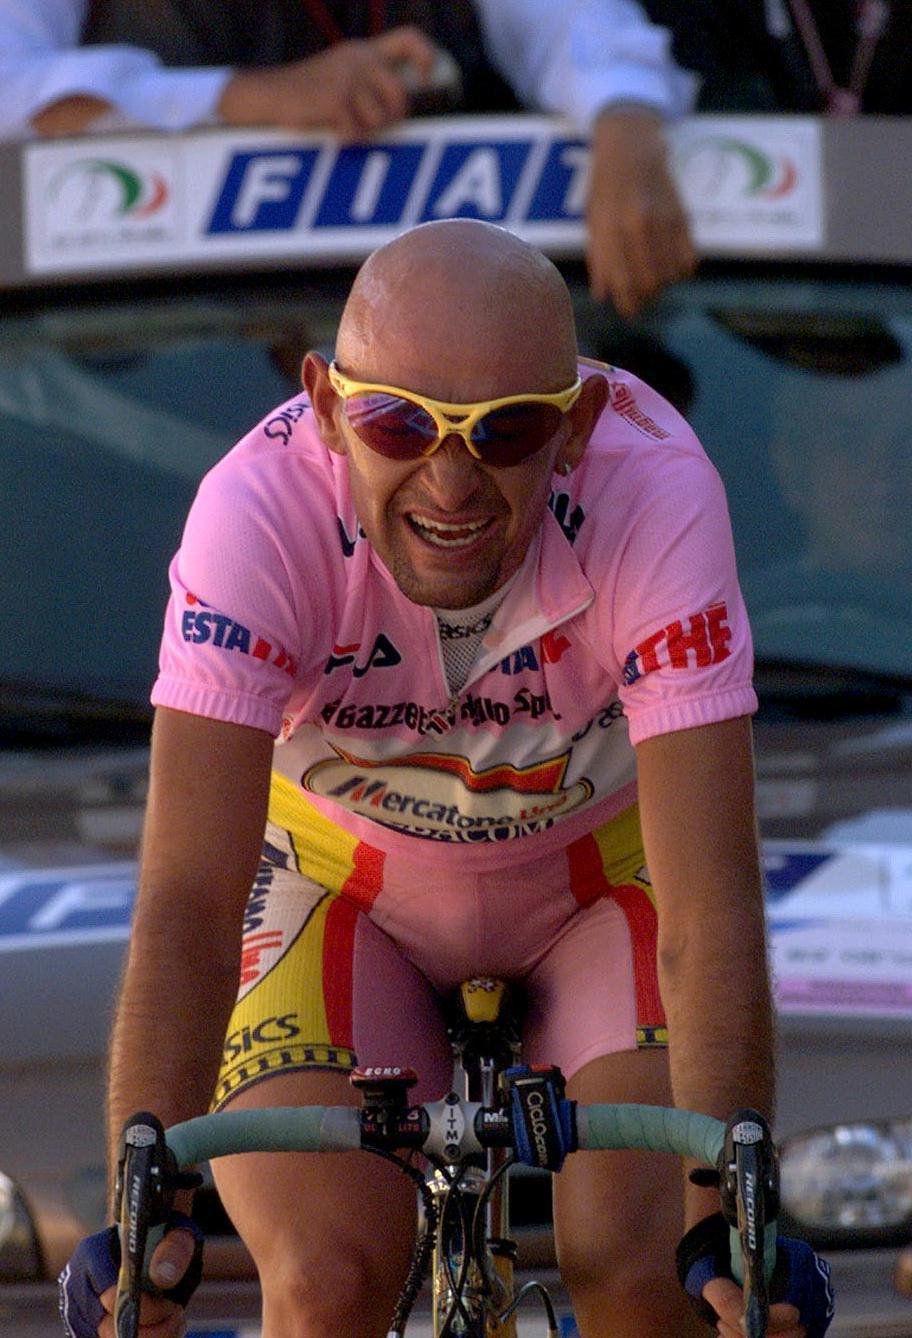 20070726 - ROMA - SPR : CICLISMO: DA MERCKX A RASMUSSEN, QUANDO PRIMATO PORTA MALE.  TANTE STORIE: POMPETTE POLLENTIER, STOP PANTANI, LACRIME CANNIBALE.
Marco Pantani in maglia rosa in un'immagine d'archivio del 4 giugno 1999 mentre taglia vittorioso il traguardo della 20/a tappa del Giro d'Italia, da Predazzo a Madonna di Campiglio di 175 km.   Fermati con la maglia del primato a ad un passo dal trionfo. Vittorie sfumate, sogni svaniti dopo tanti sacrifici quando ormai il successo finale sembrava cosa fatta. L'esclusione del danese Michael Rasmussen dalla 'Grande Boucle', per aver saltato dei controlli antidoping a sorpresa mentendo sui luoghi dei suoi allenamenti, e' solo l'ultima in ordine cronologico.   
ANSA / DANIEL DAL ZENNARO-ARCHIVIO / PAL